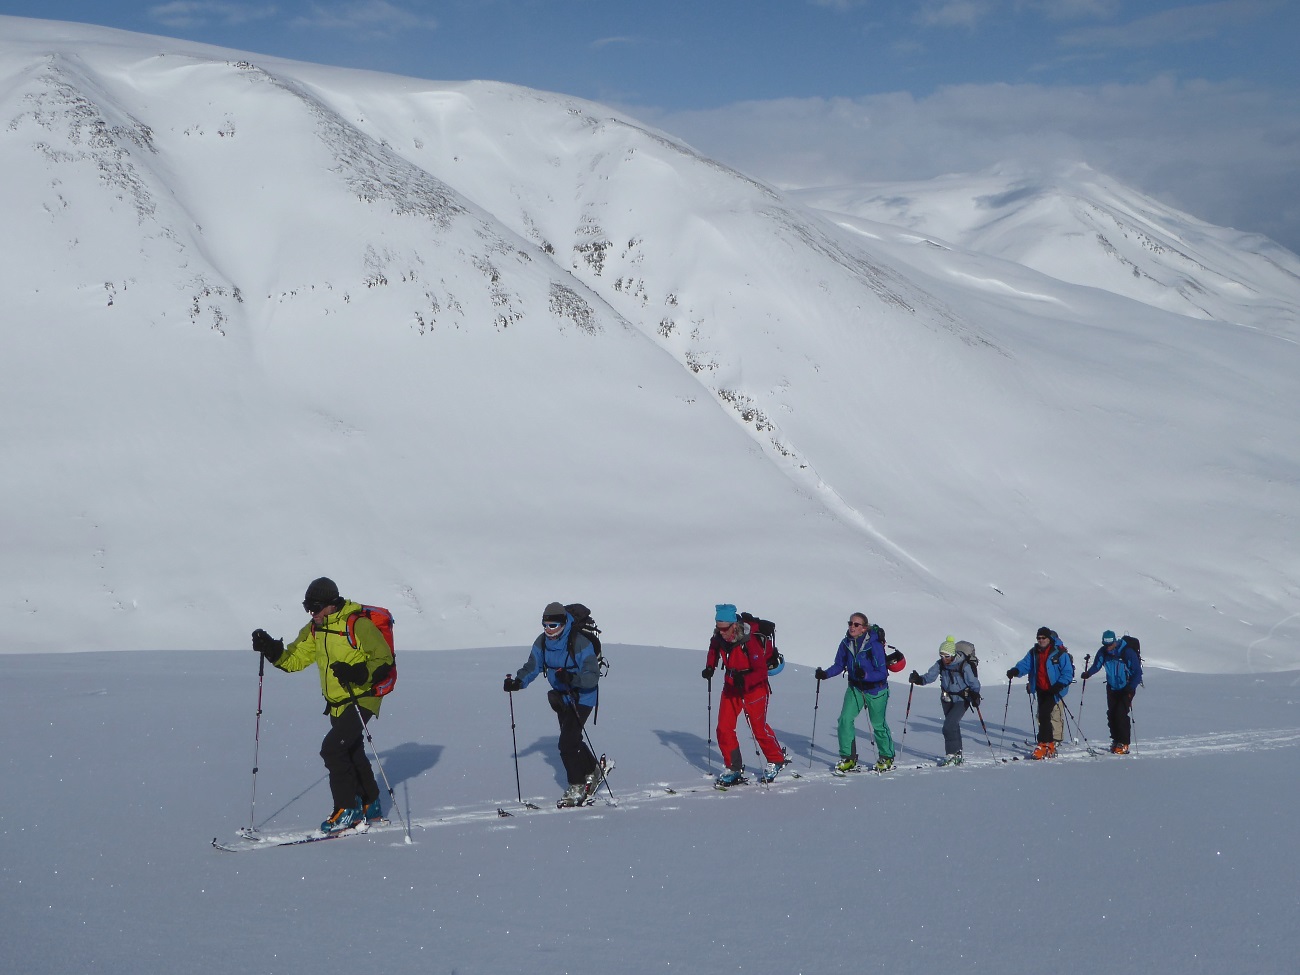 El esquí de montaña se perfila como la estrella de este invierno